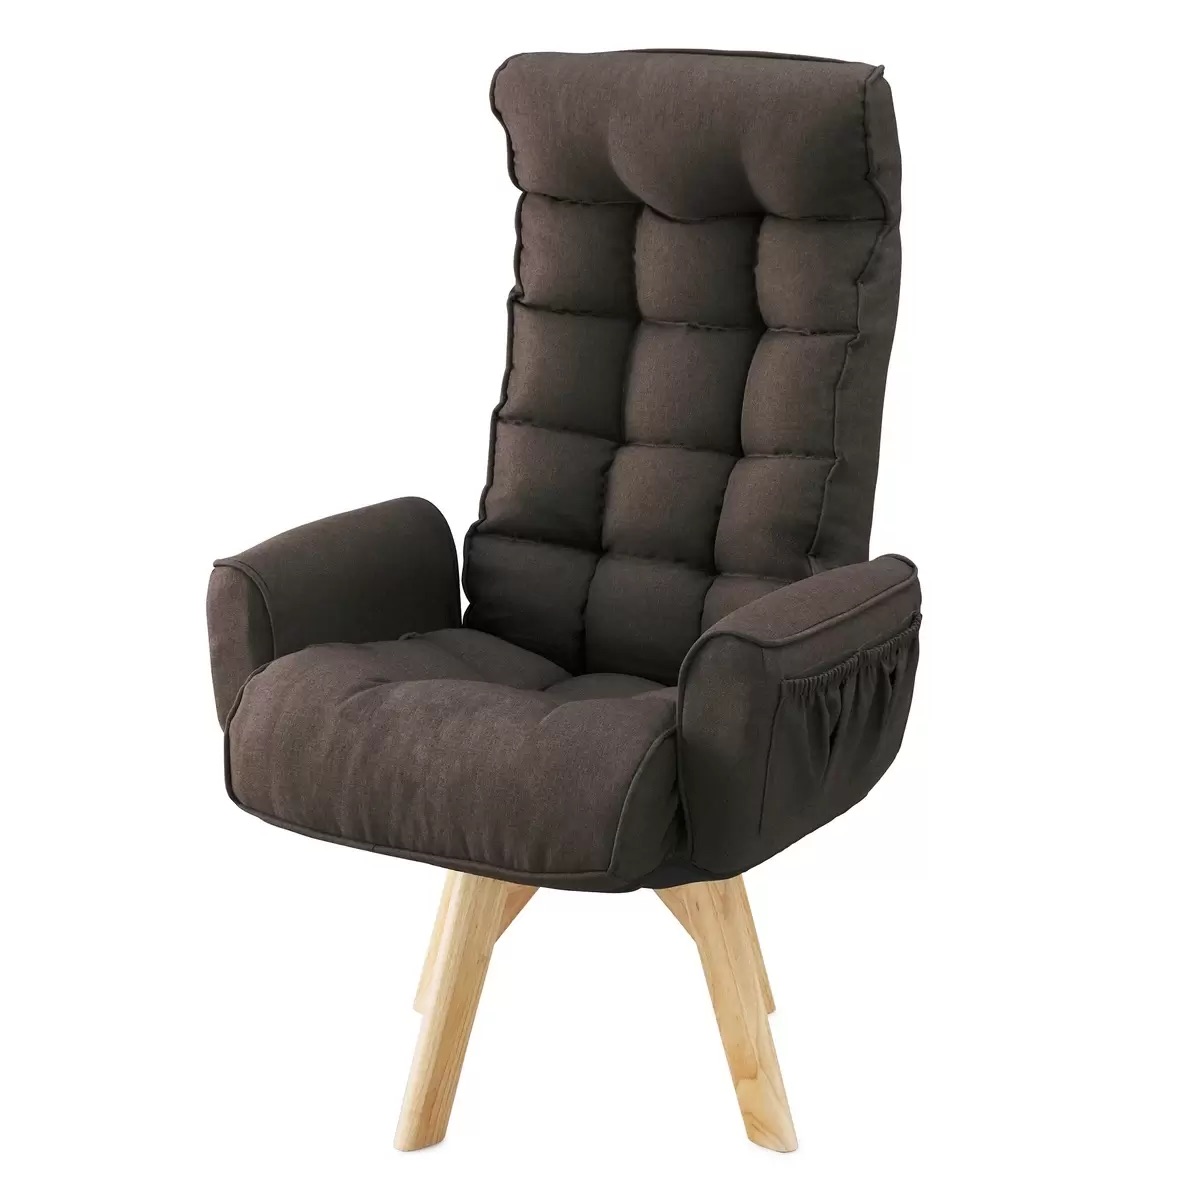 アイリスオーヤマ 回転ファブリックチェア ハイバック ブラウン IRIS OHYAMA Fabric Swivel Chair High-Back Brown